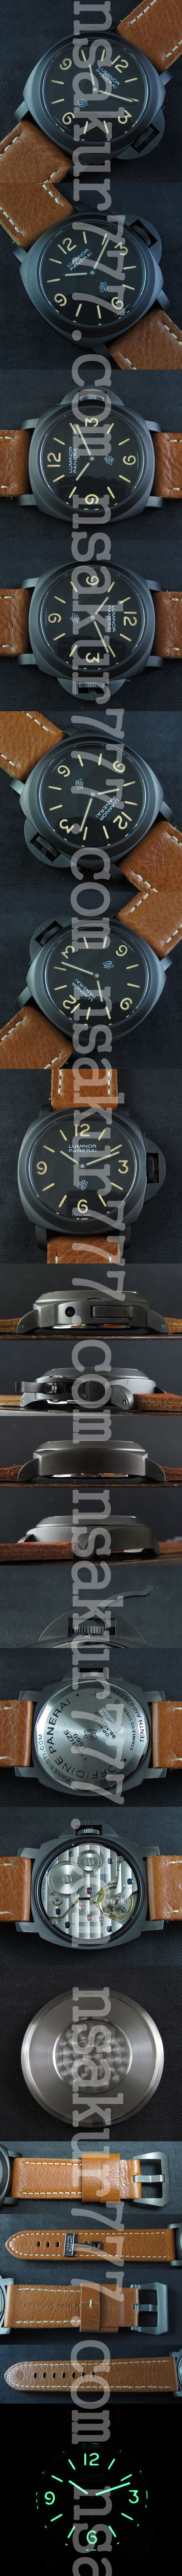 スーパーコピー メンズ腕時計 パネライ ルミノール PAM00360 Asian Unitas 6497搭載 スーパールミナンス(夜光)